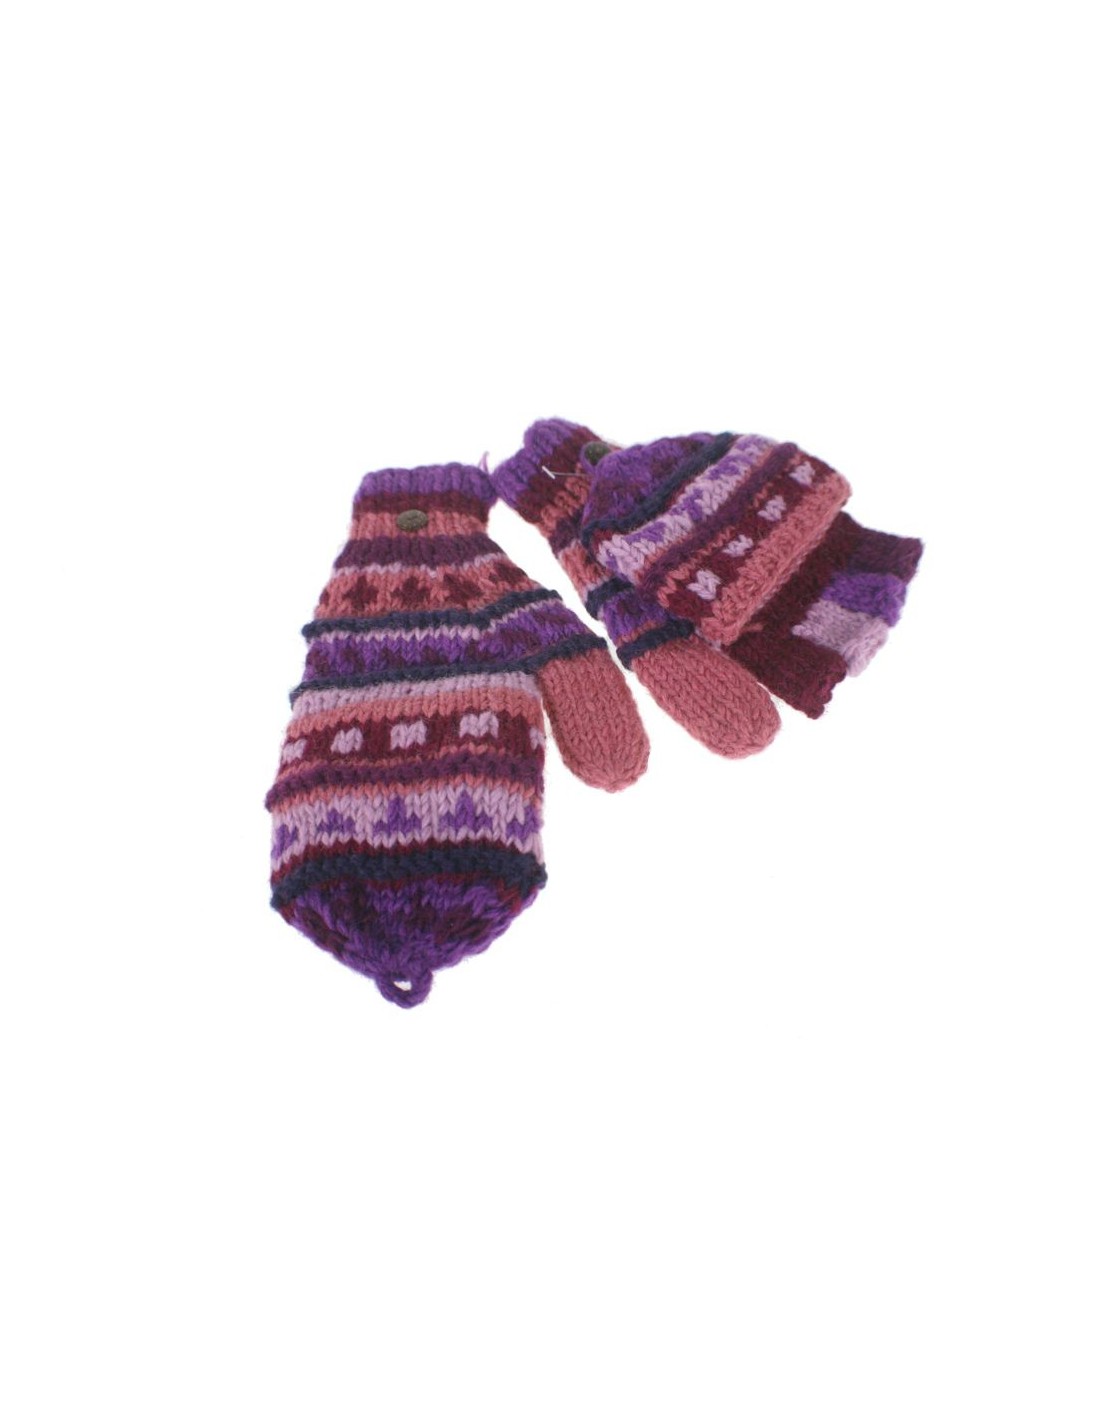 Guantes mitones con capucha de lana color lila artesanal guantes calientes suaves cómodos para el frio invierno guantes mitones